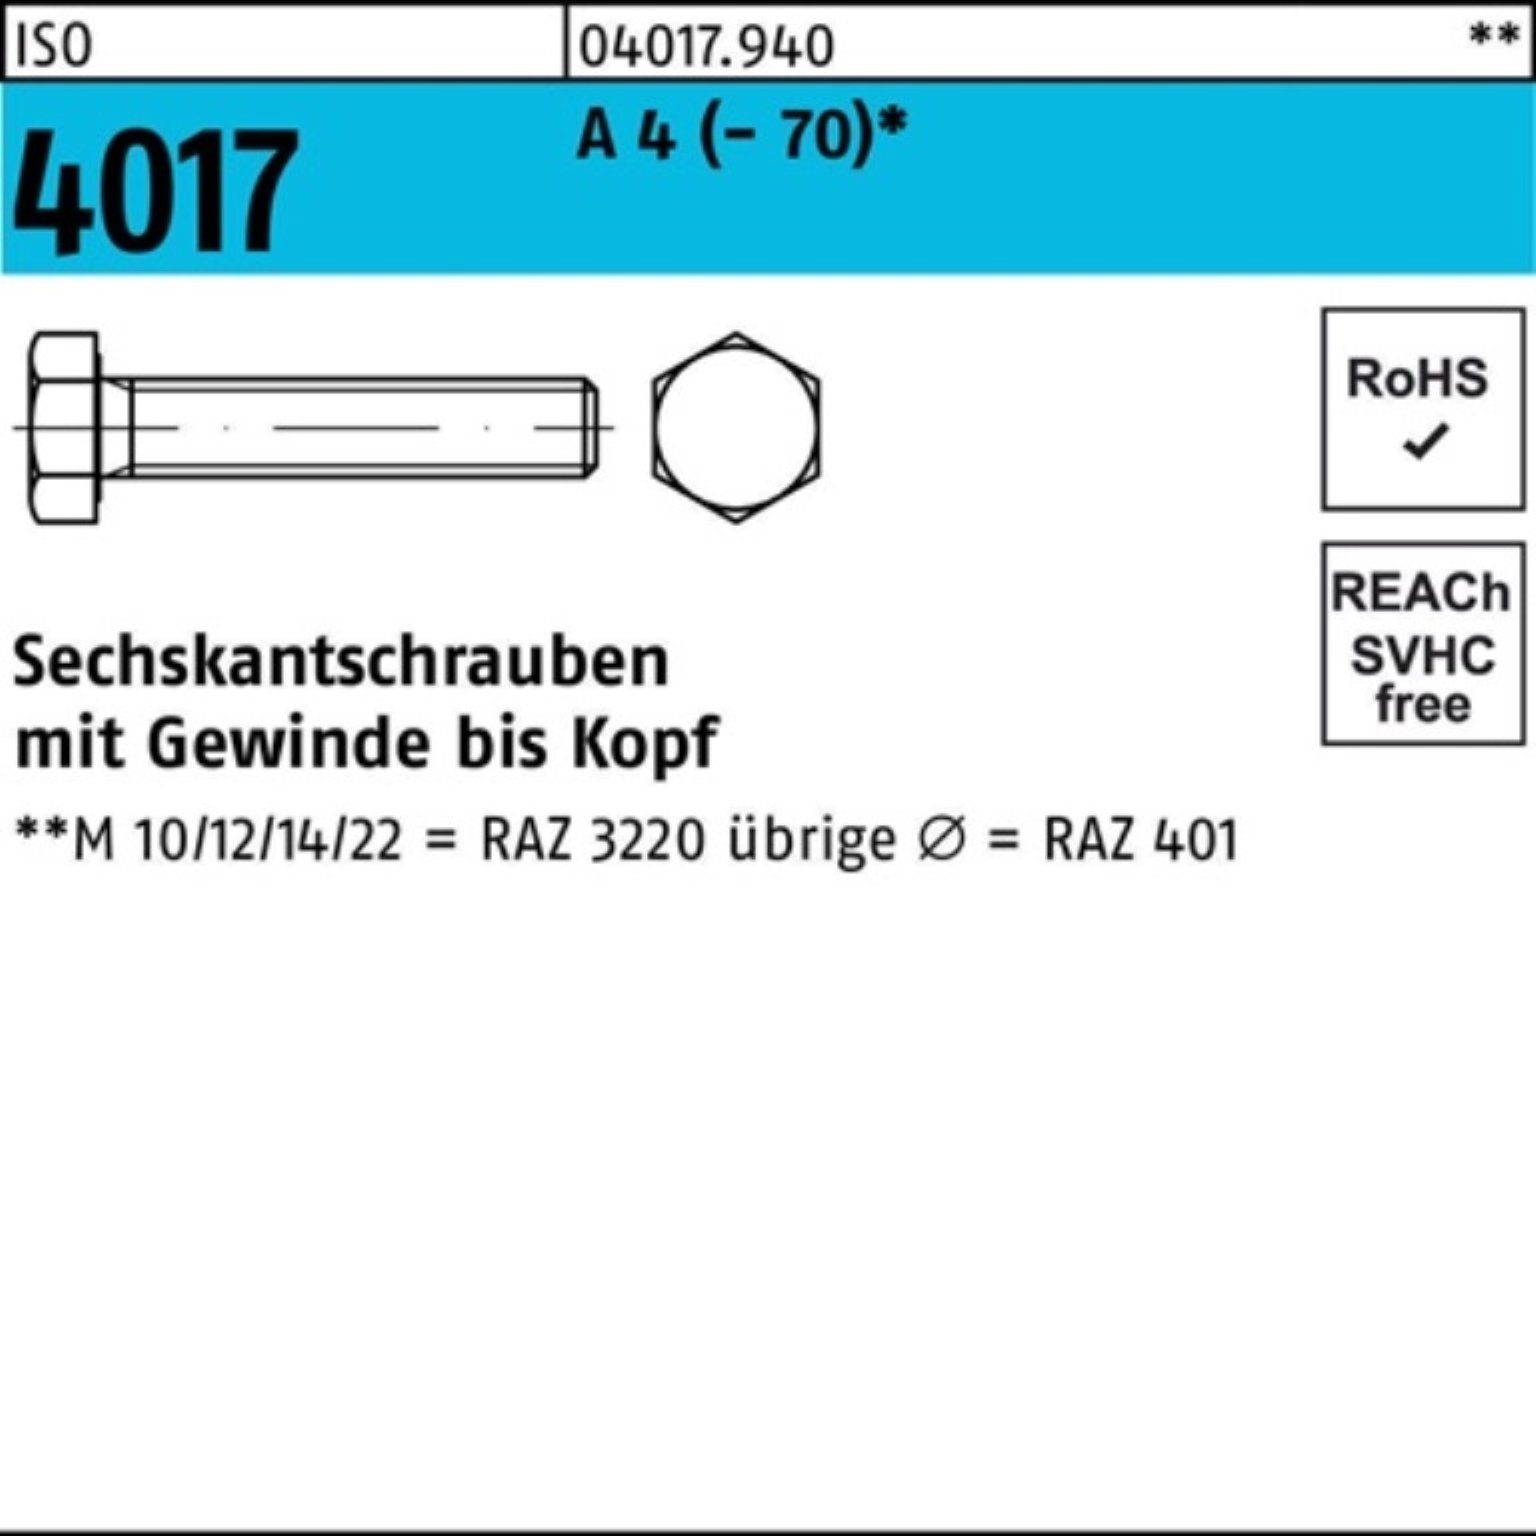 VG 1 M24x Pack ISO 100er A Sechskantschraube (70) 4 190 Bufab Sechskantschraube Stück 4017